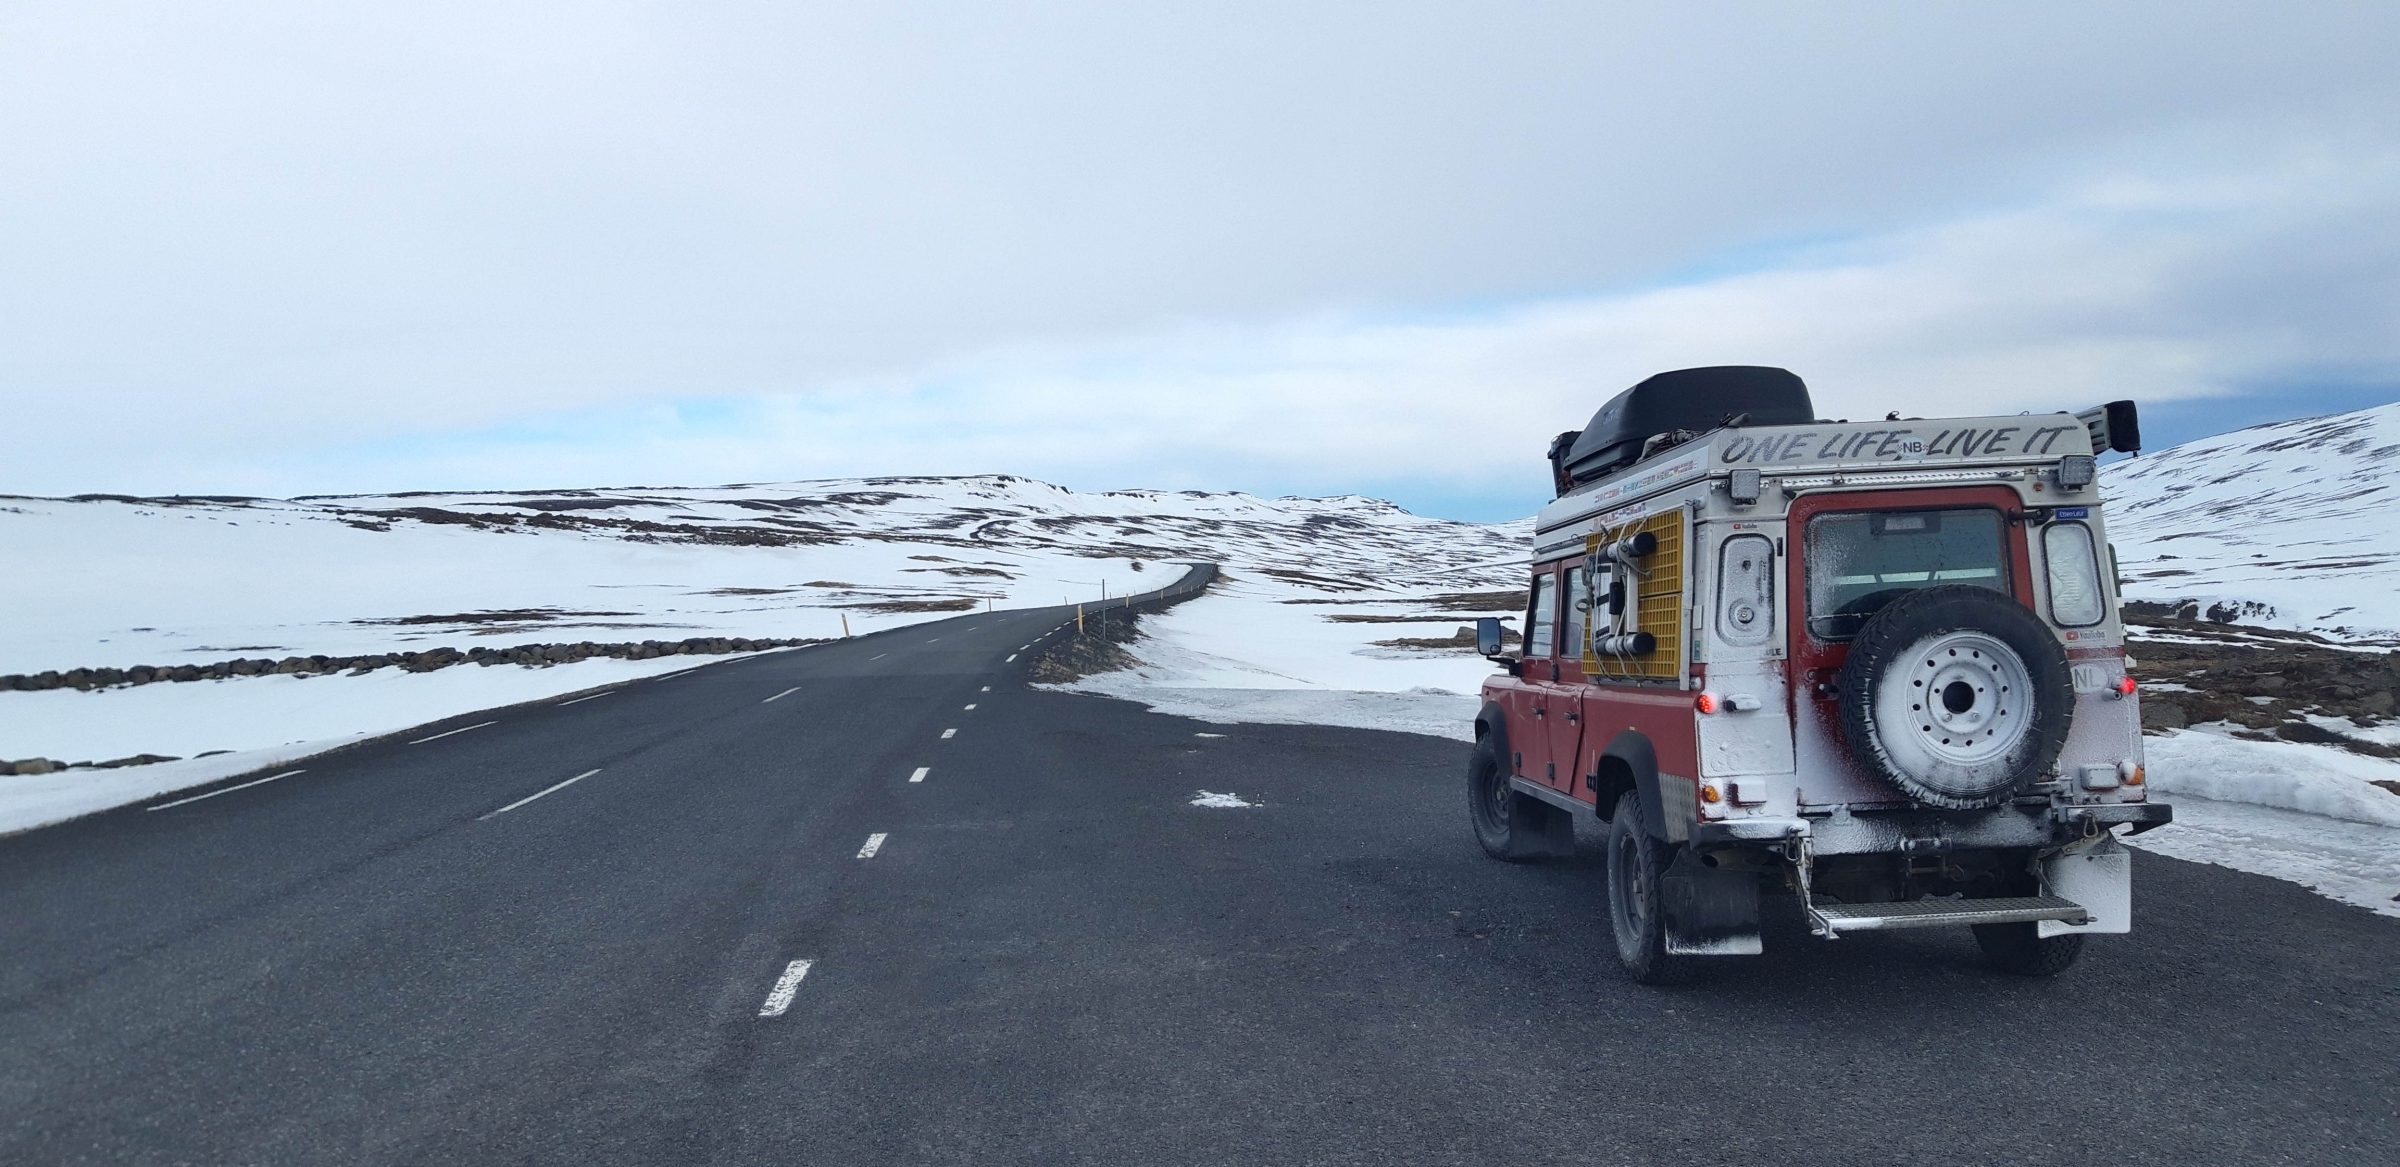 Dia 2 na Islândia, uma pequena tempestade de neve | Islândia e Ilhas Faroe no inverno